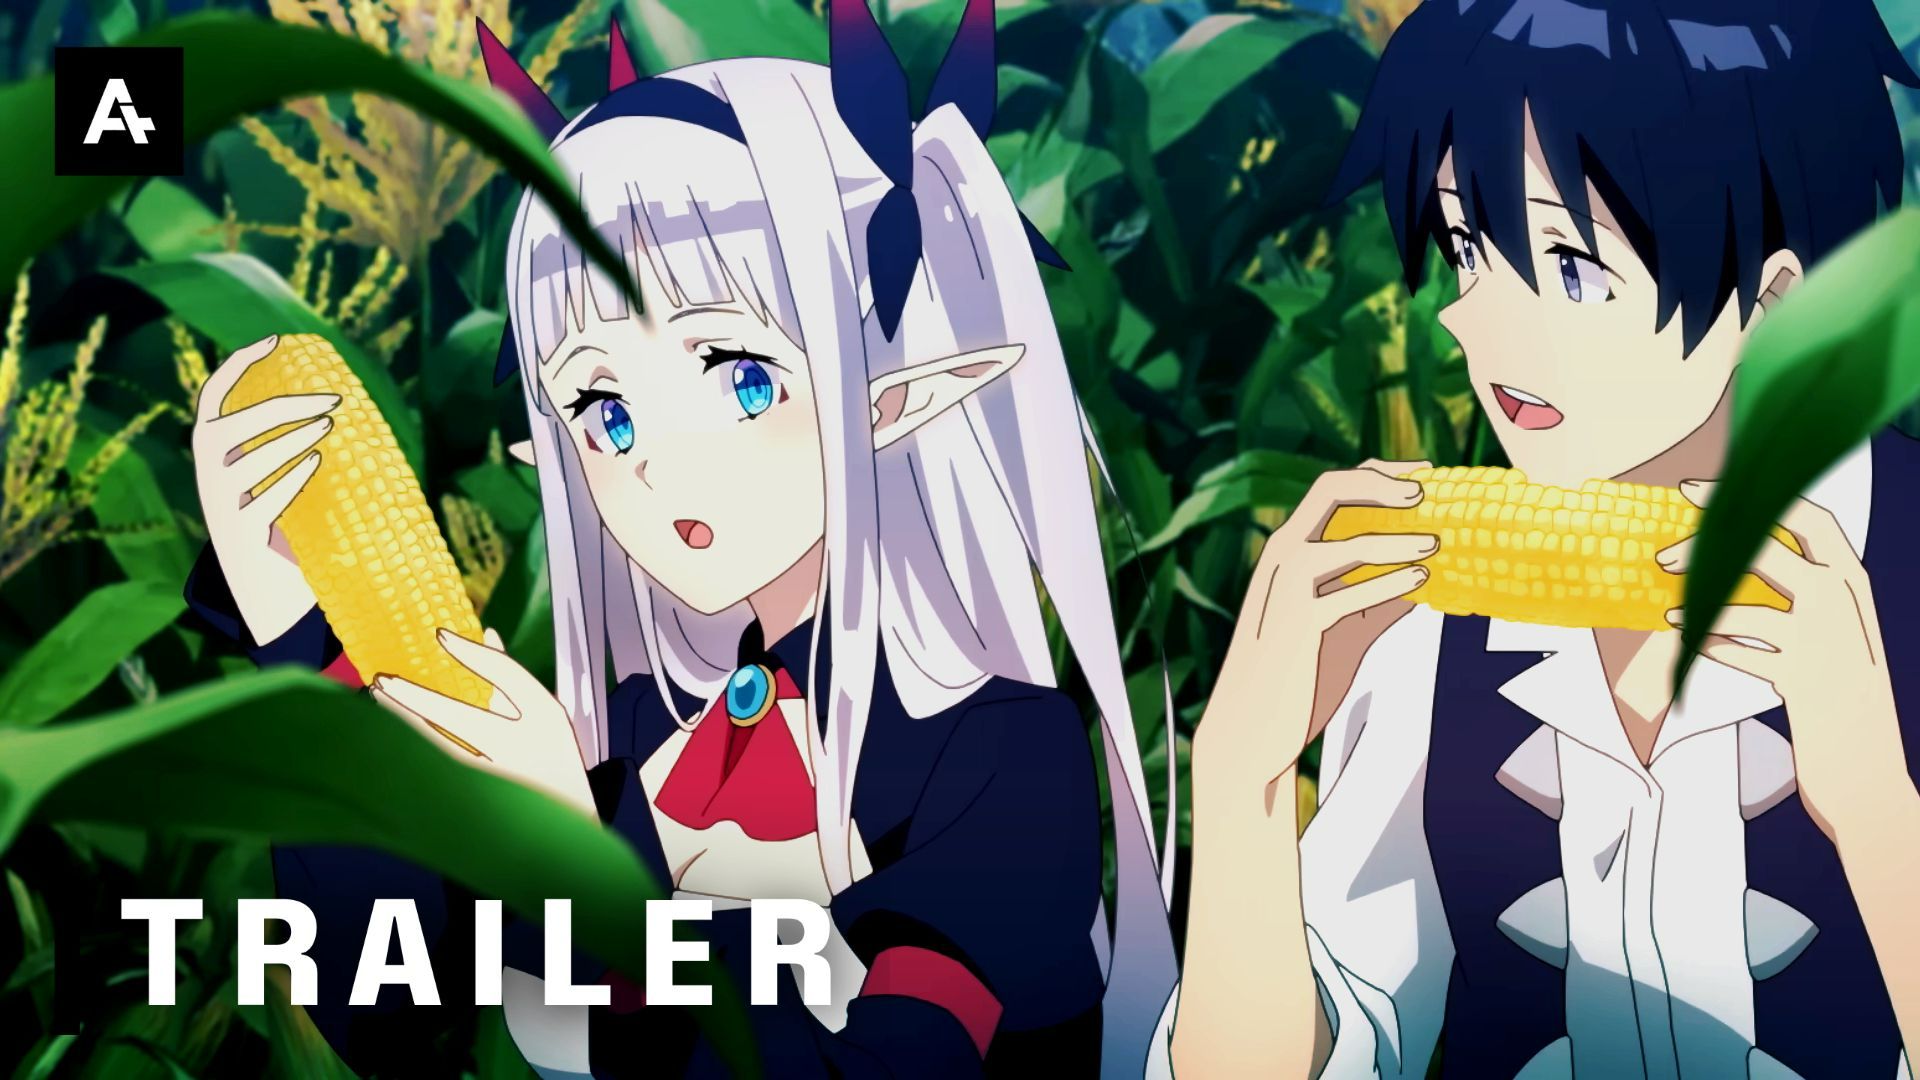 Novo trailer da série anime Farming Life in Another World